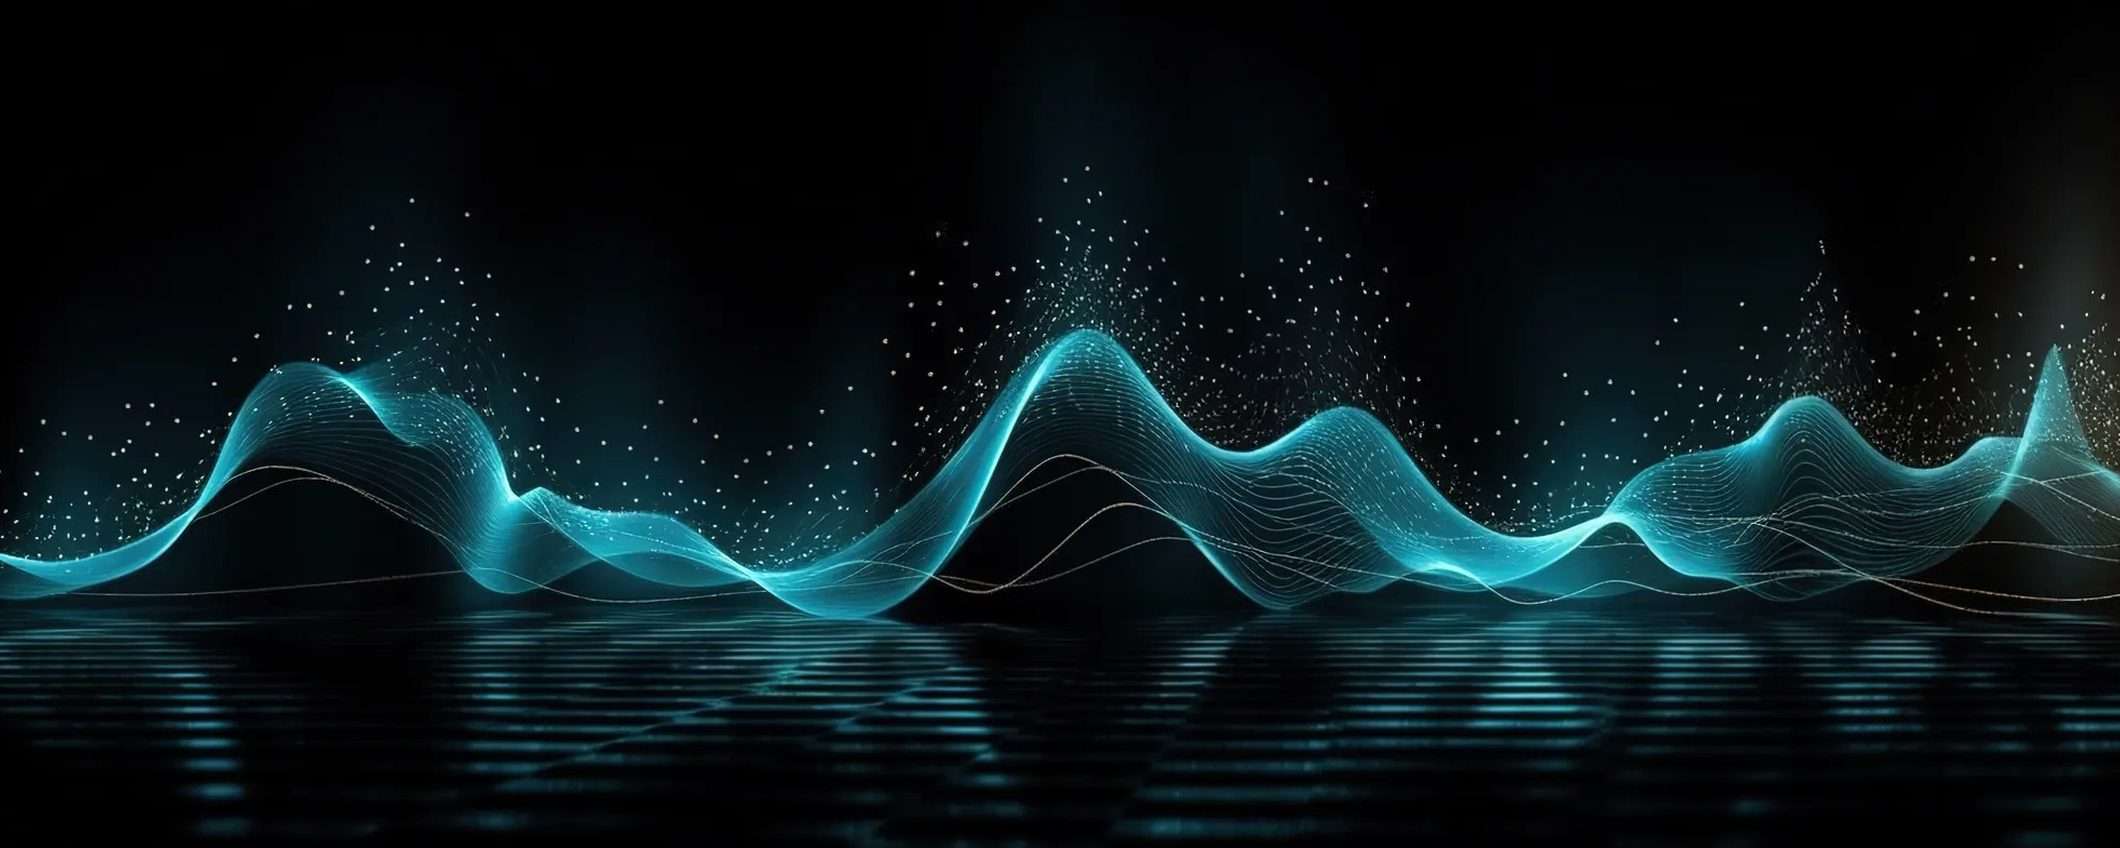 Adobe annuncia un tool IA per generare musica